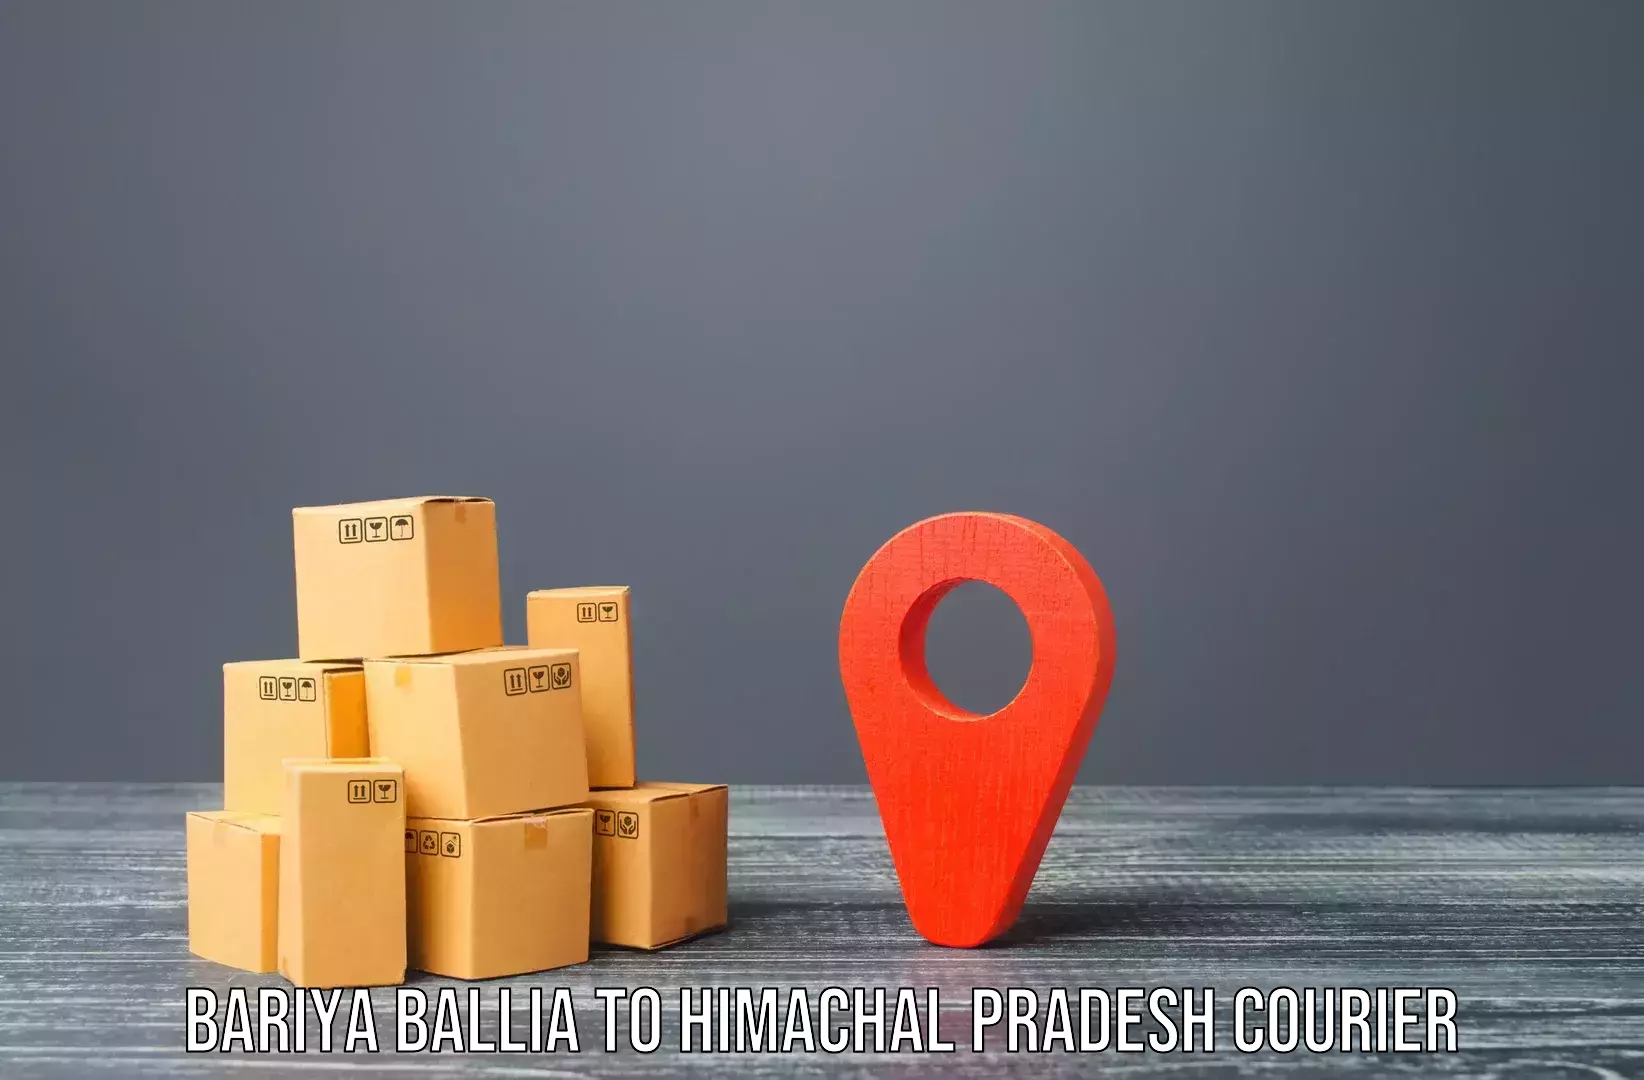 Moving and packing experts Bariya Ballia to Chachyot